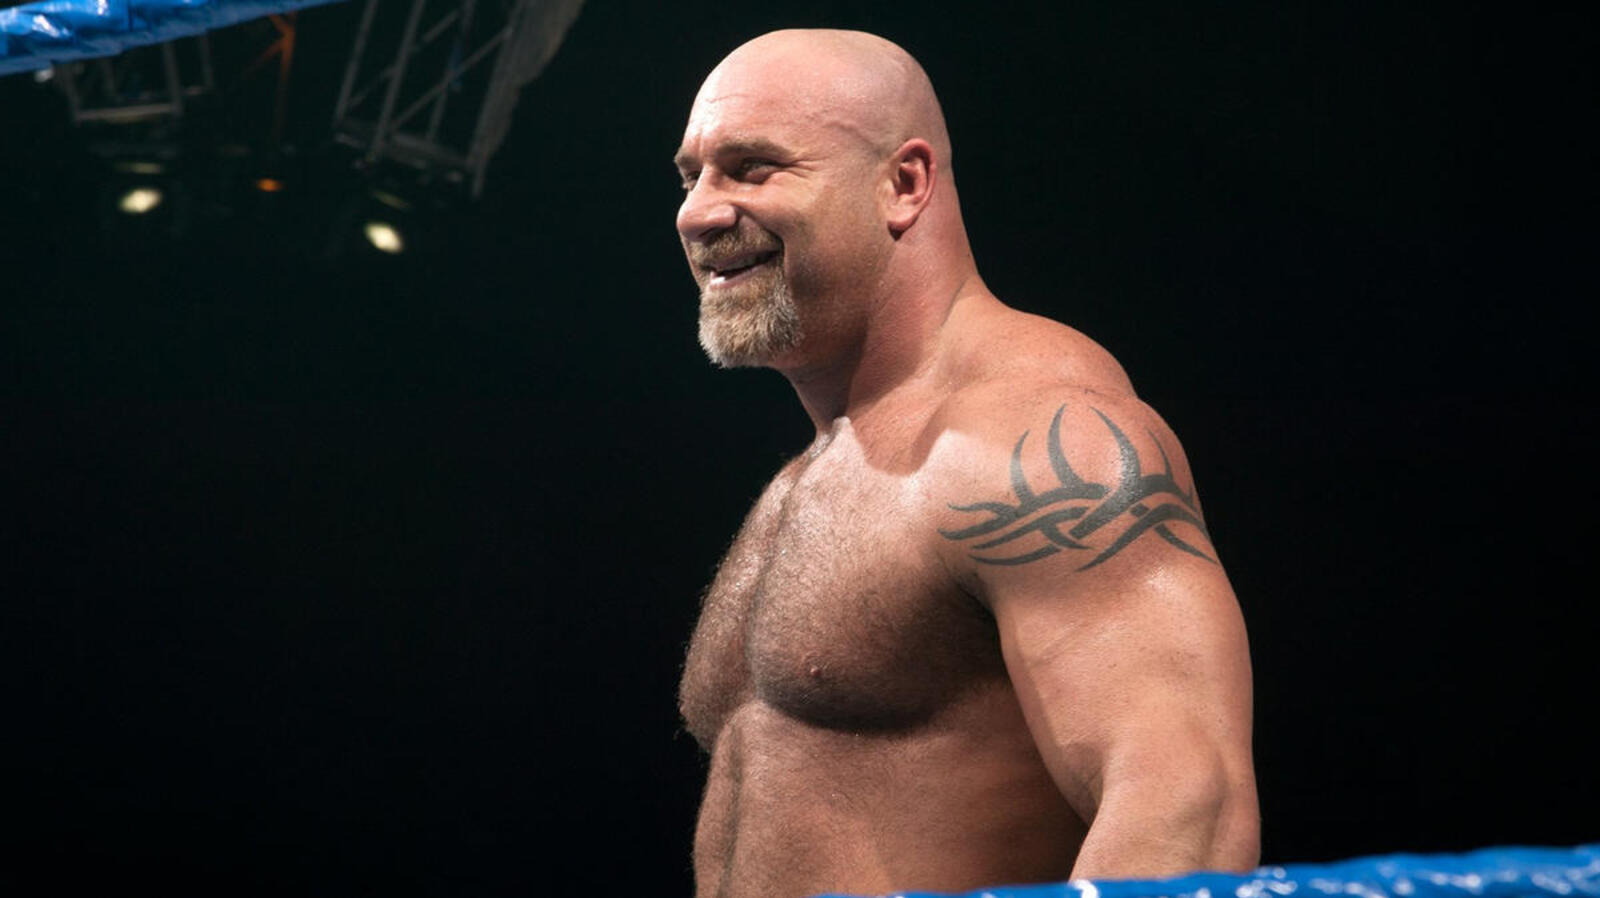 Ted DiBiase duda del valor de Goldberg por el empujón que recibió en la lucha libre profesional